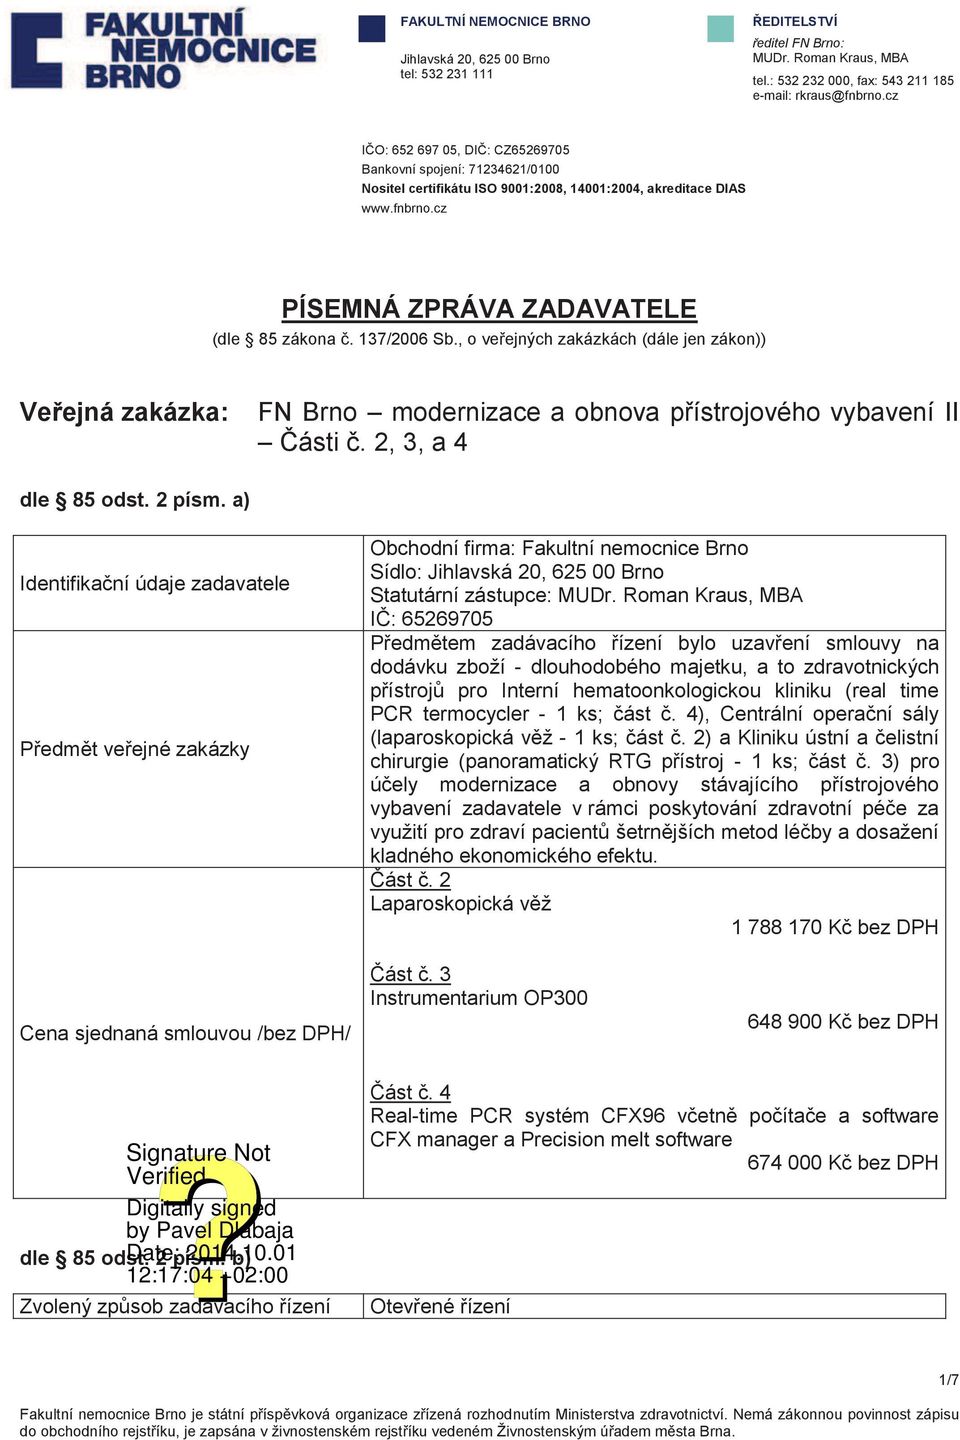 , o veřejných zakázkách (dále jen zákon)) Veřejná zakázka: FN Brno modernizace a obnova přístrojového vybavení II Části č. 2, 3, a 4 dle 85 odst. 2 písm.